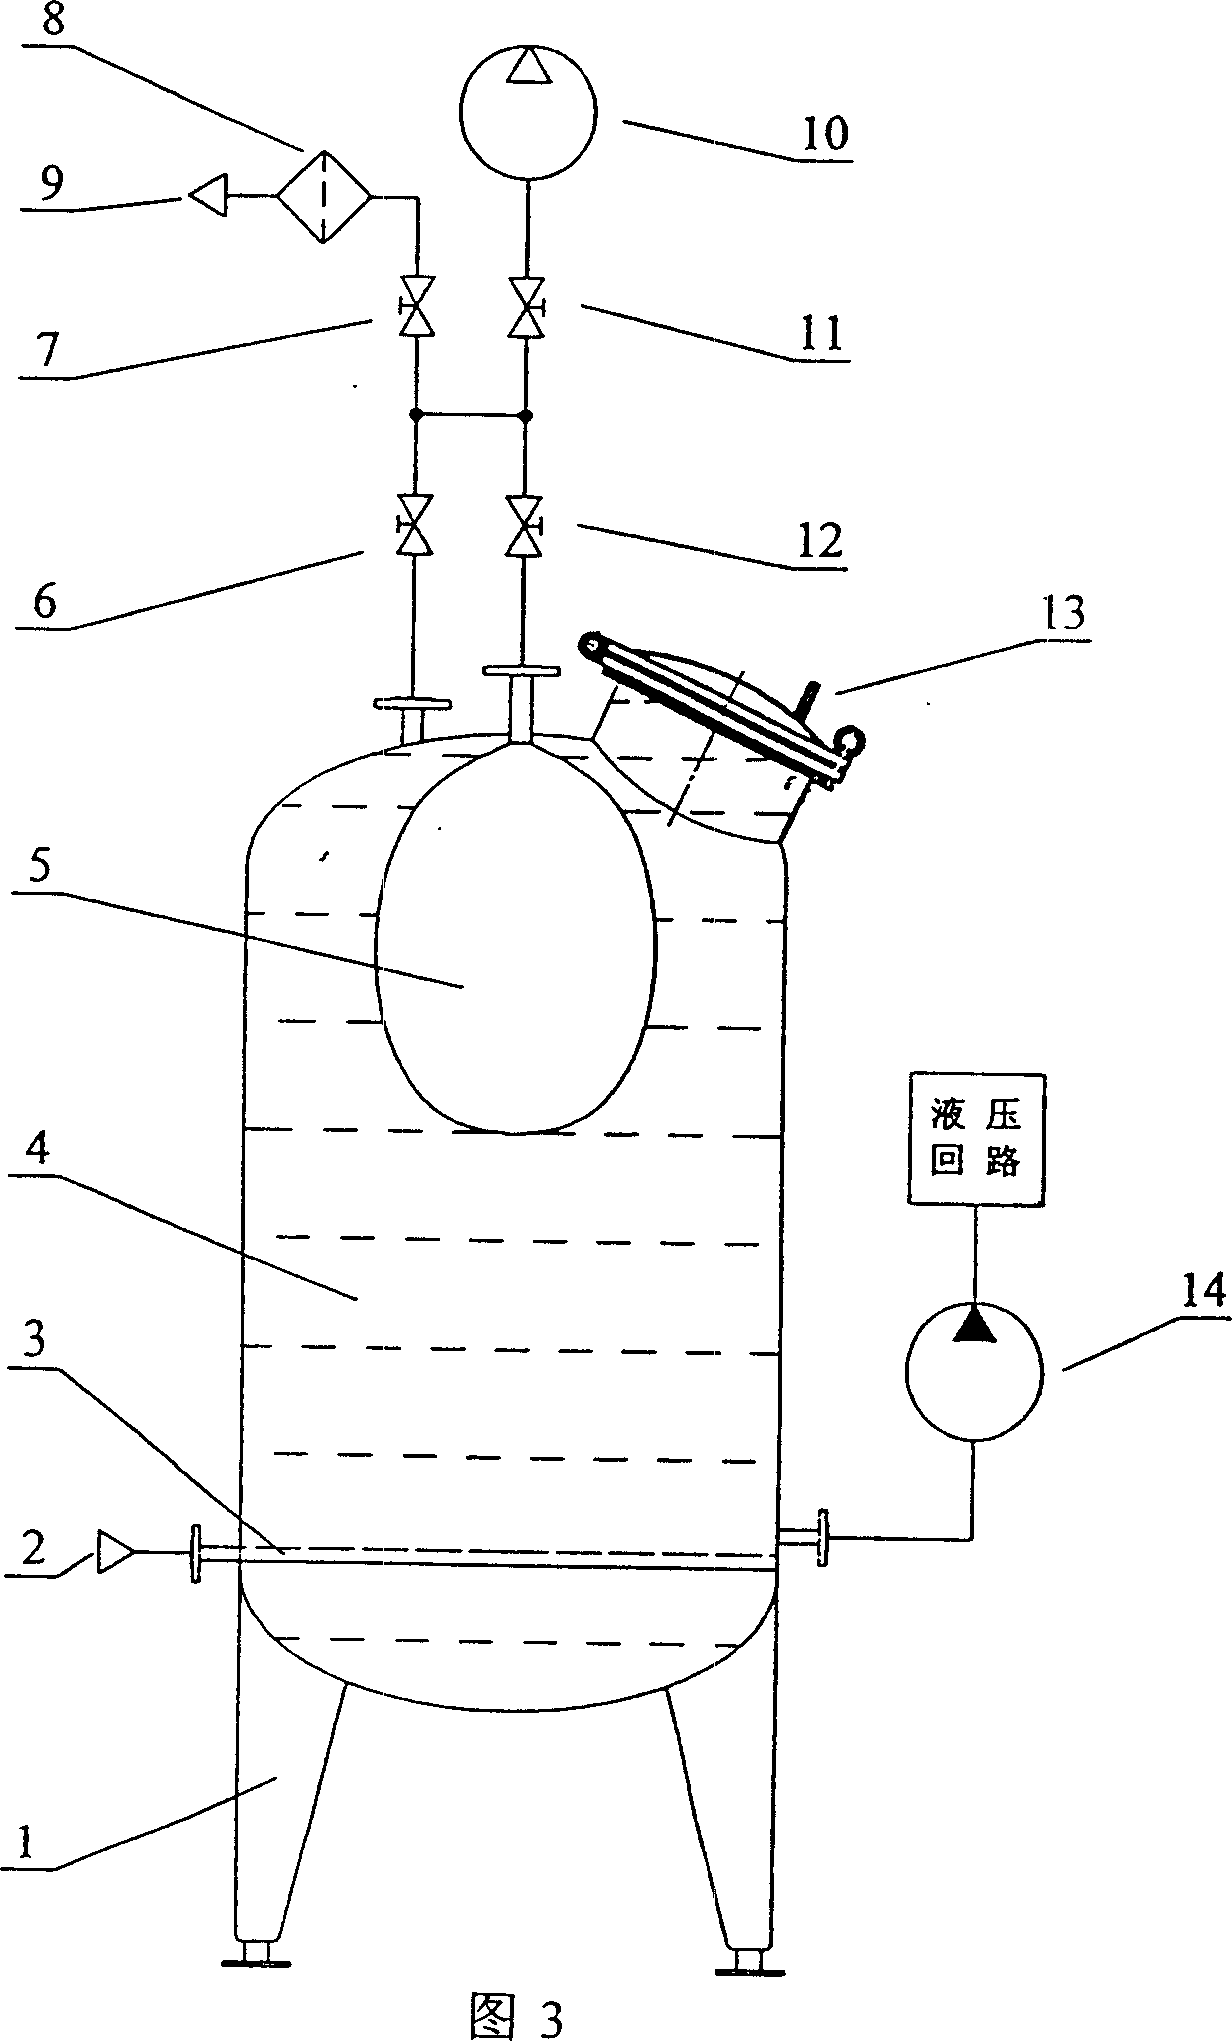 Pressure oil box for removing gas in hydraulic oil liquid